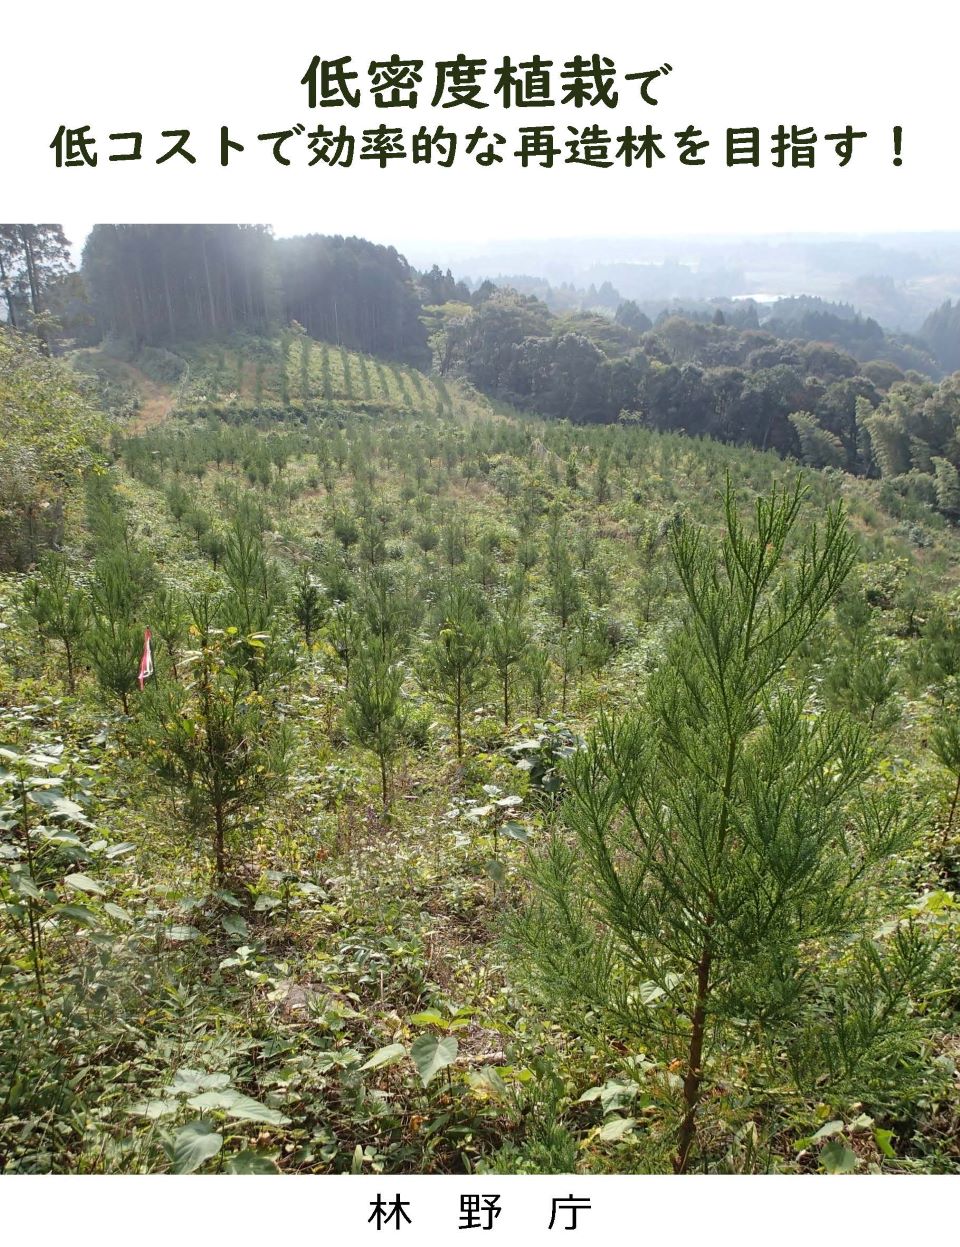 パンフレット「低密度植栽で低コストで効率的な再造林を目指す！」写真